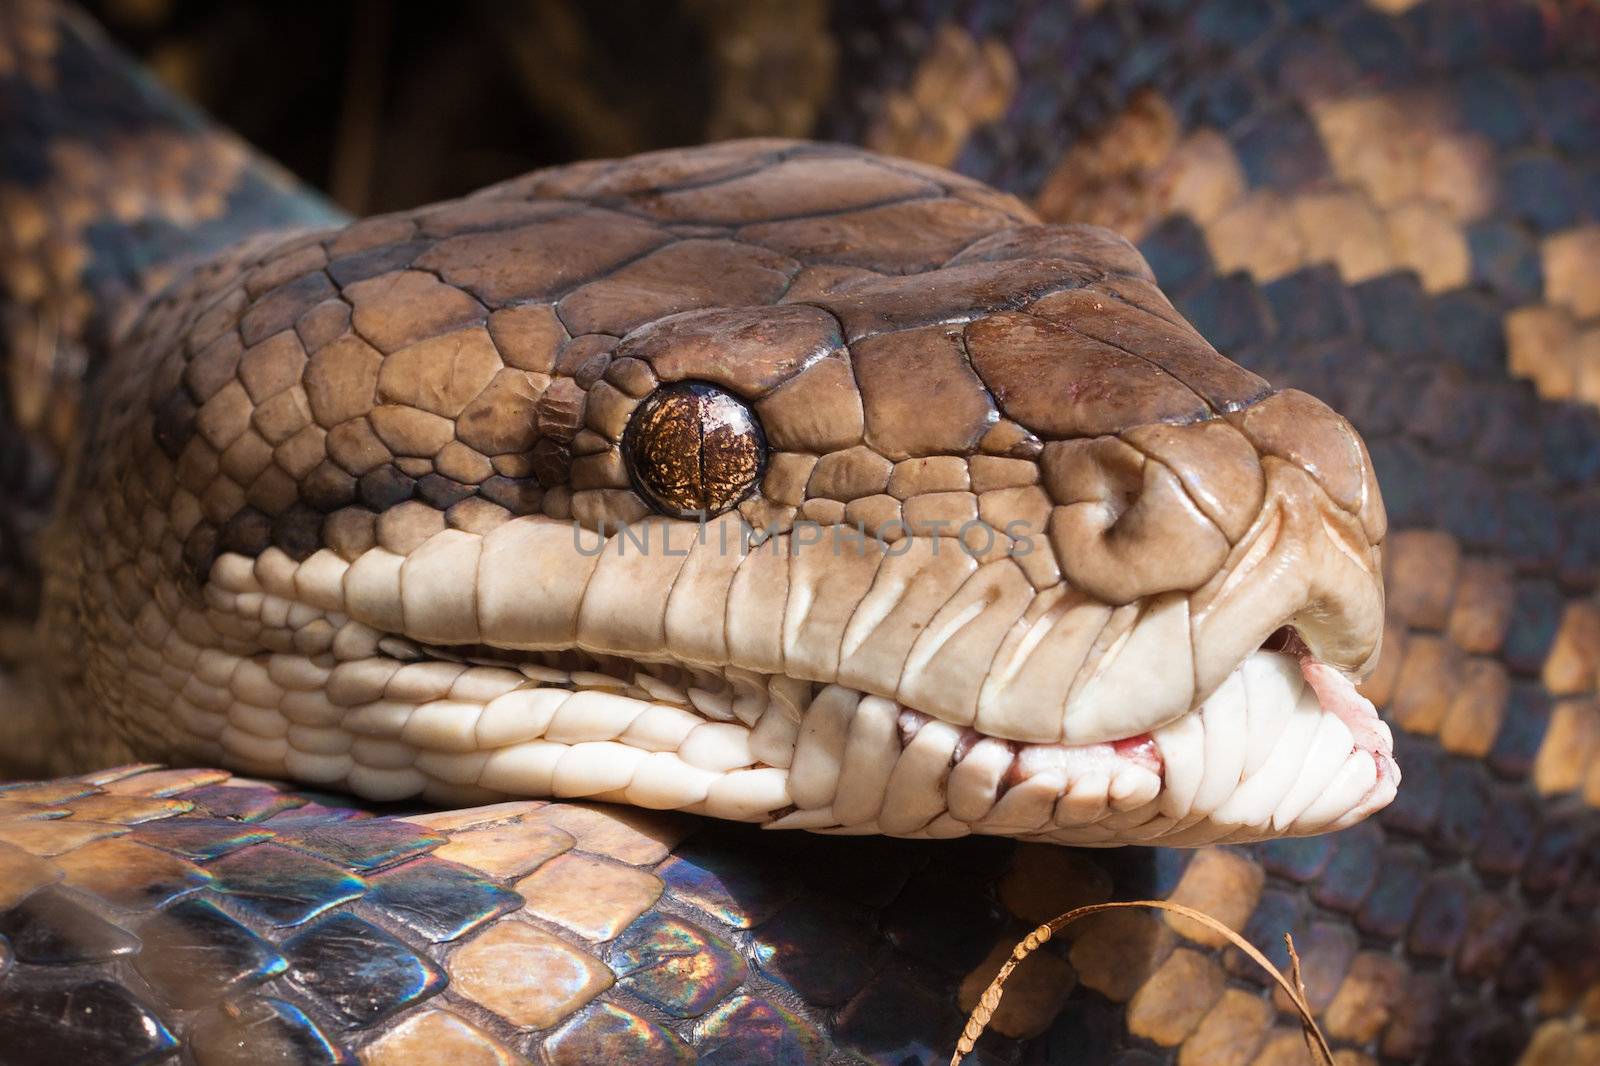 Close-up shot of a Carpet python, Queensland, Australia